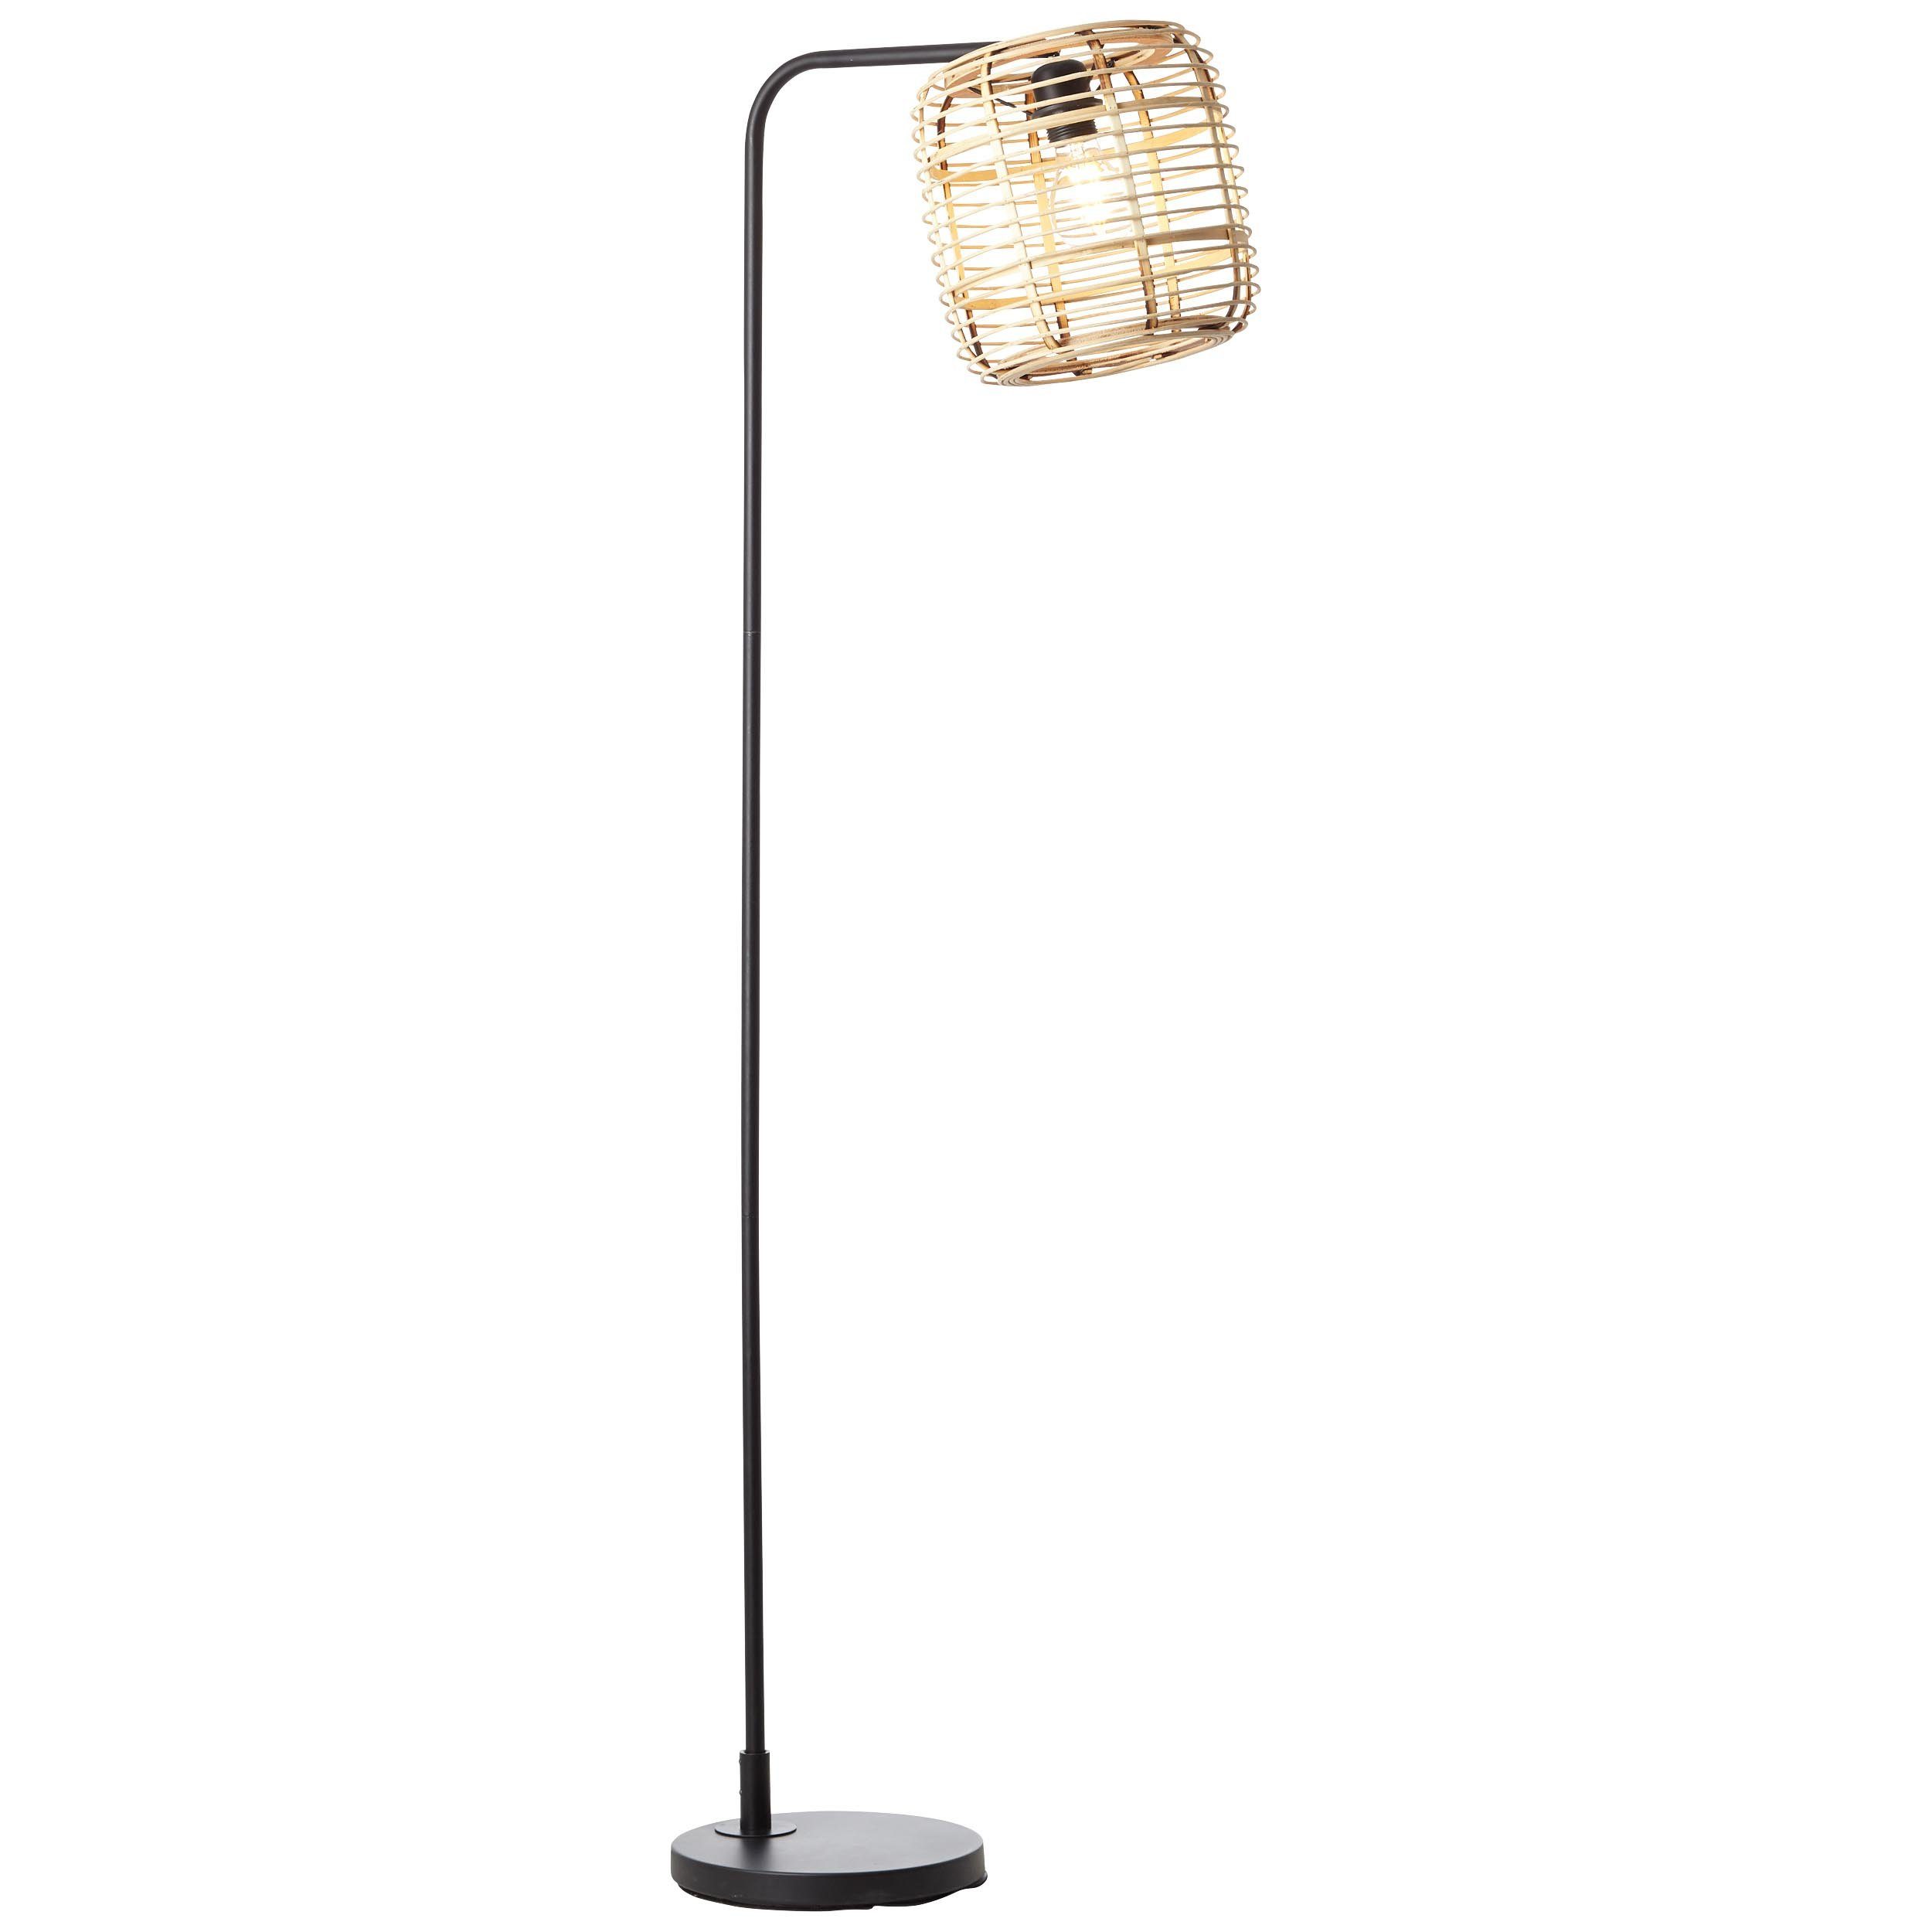 Brilliant Stehlampe Crosstown, ohne Leuchtmittel, 152 cm Höhe, 61 cm Ausl,  E27, schwenkbar, Metall/Bambus, natur/schwarz